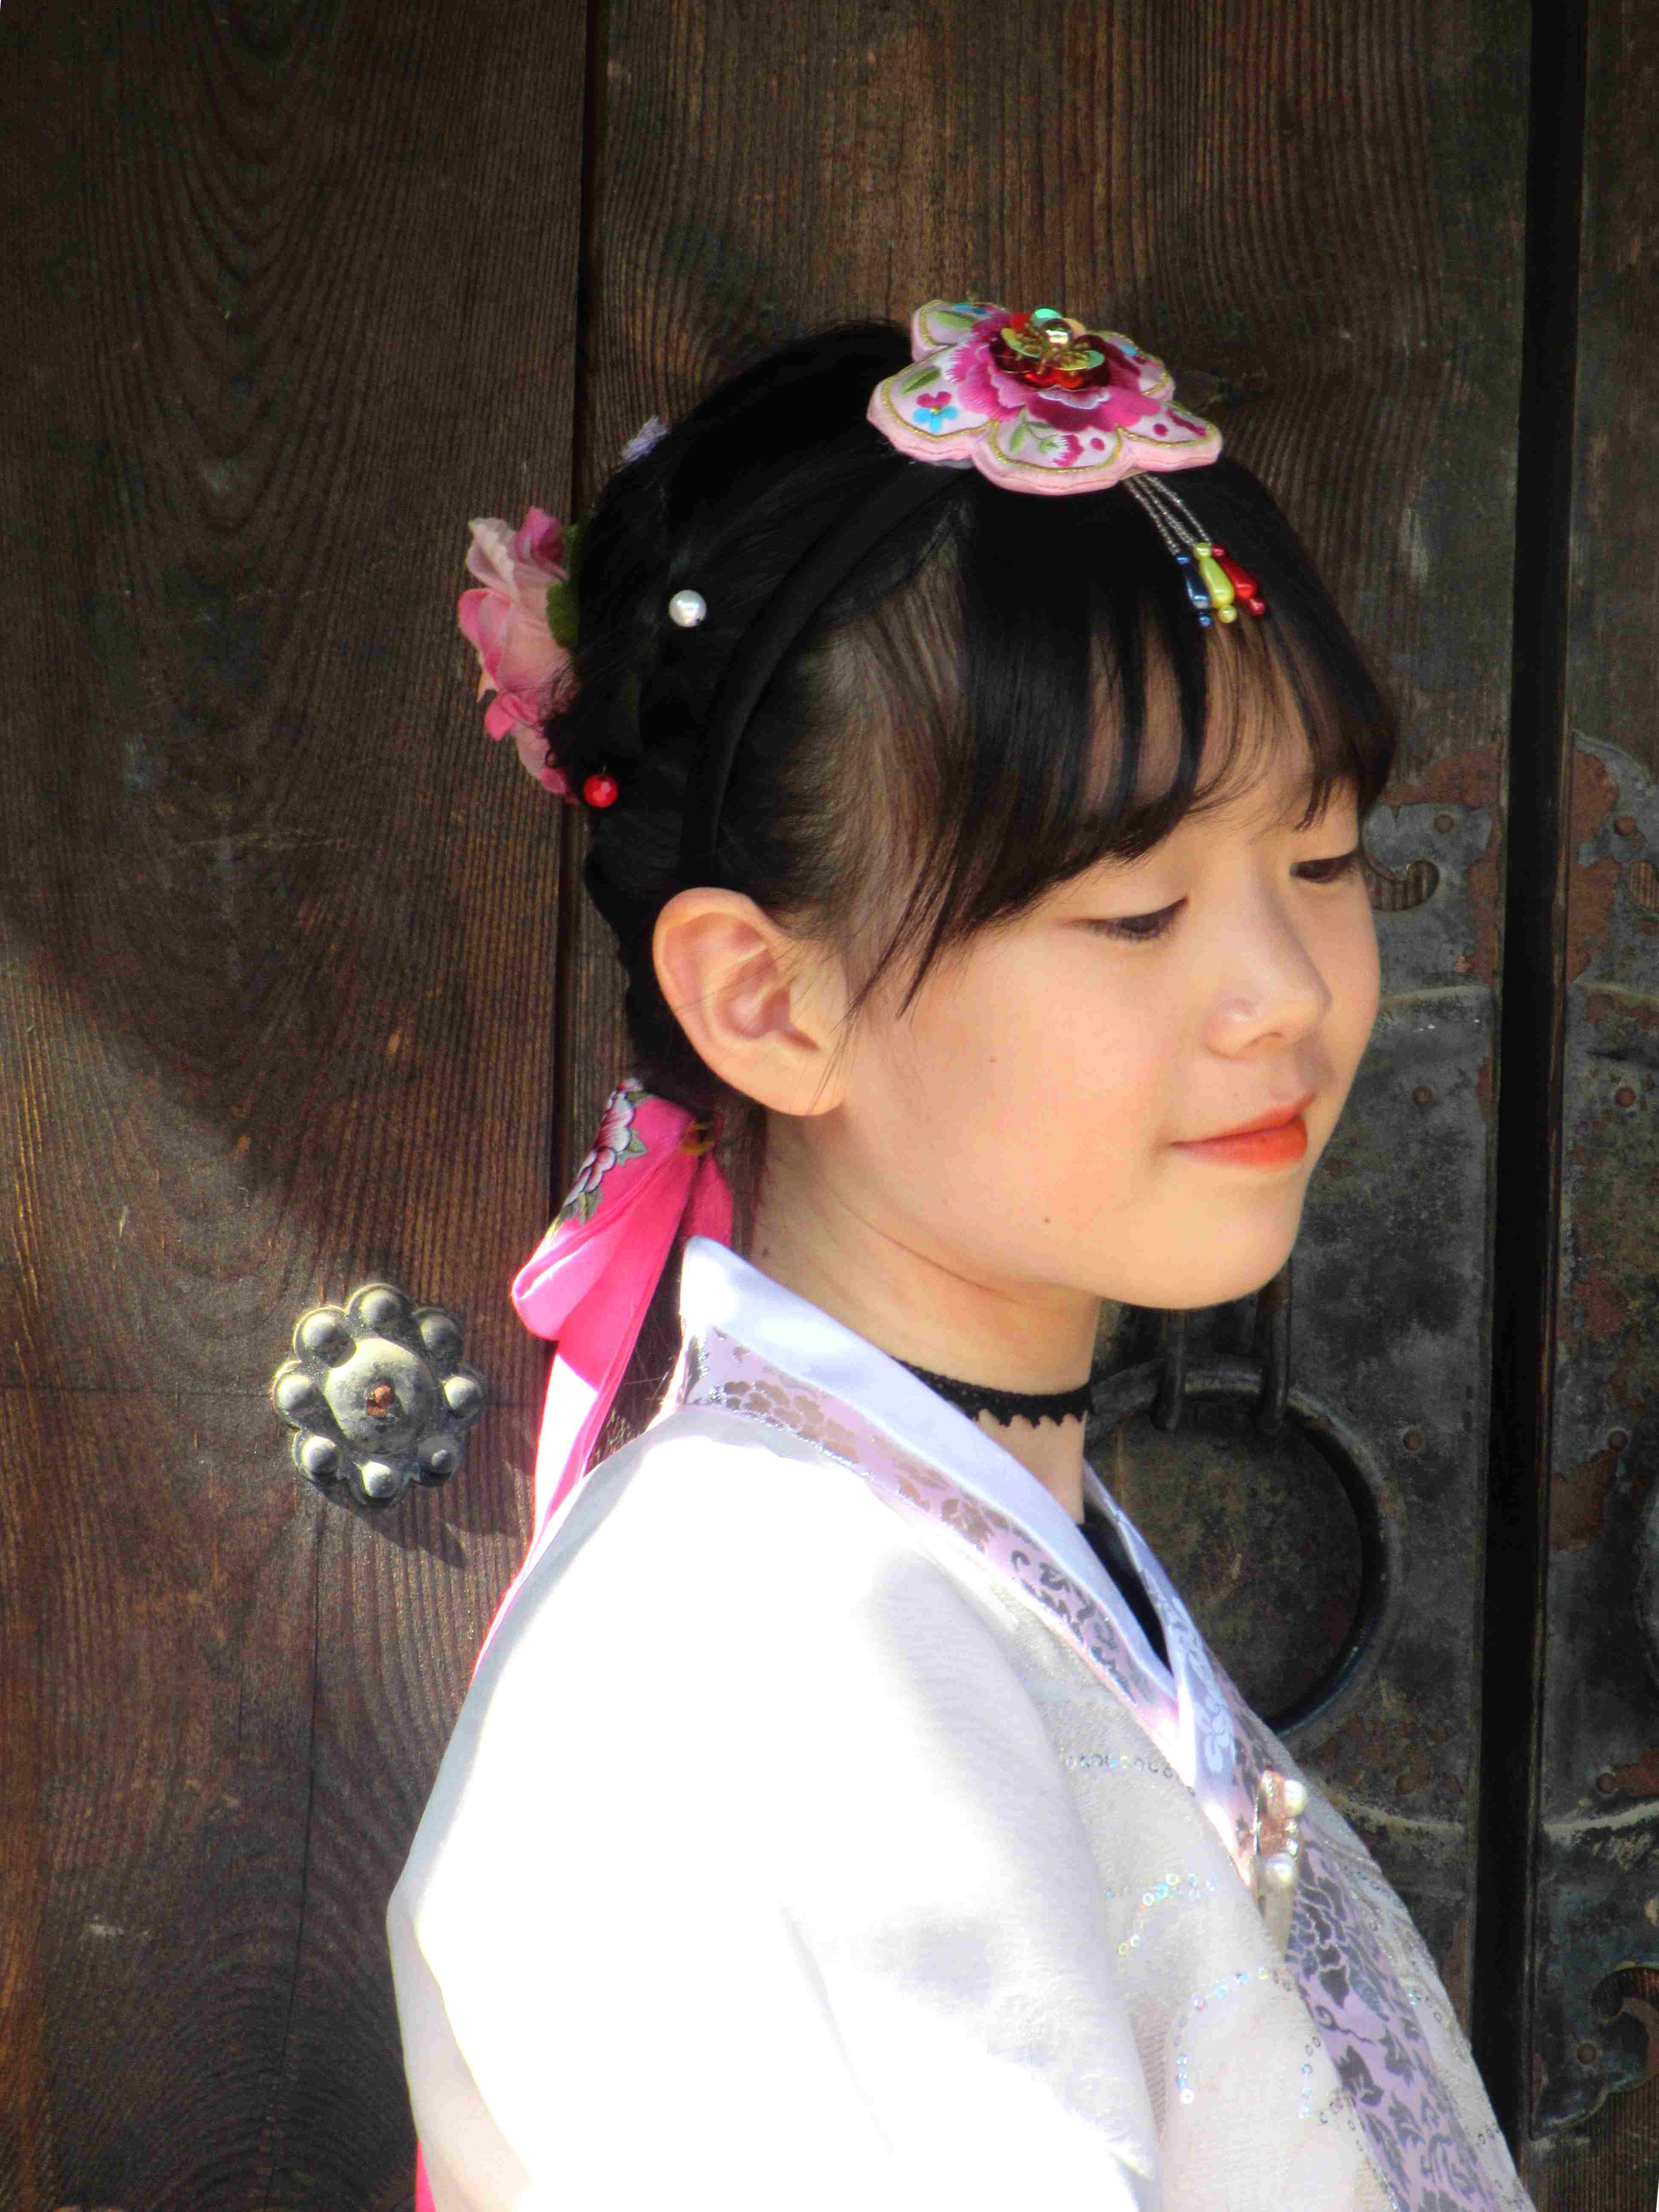 Le hanbok, le costume traditionnel de la Corée du sud